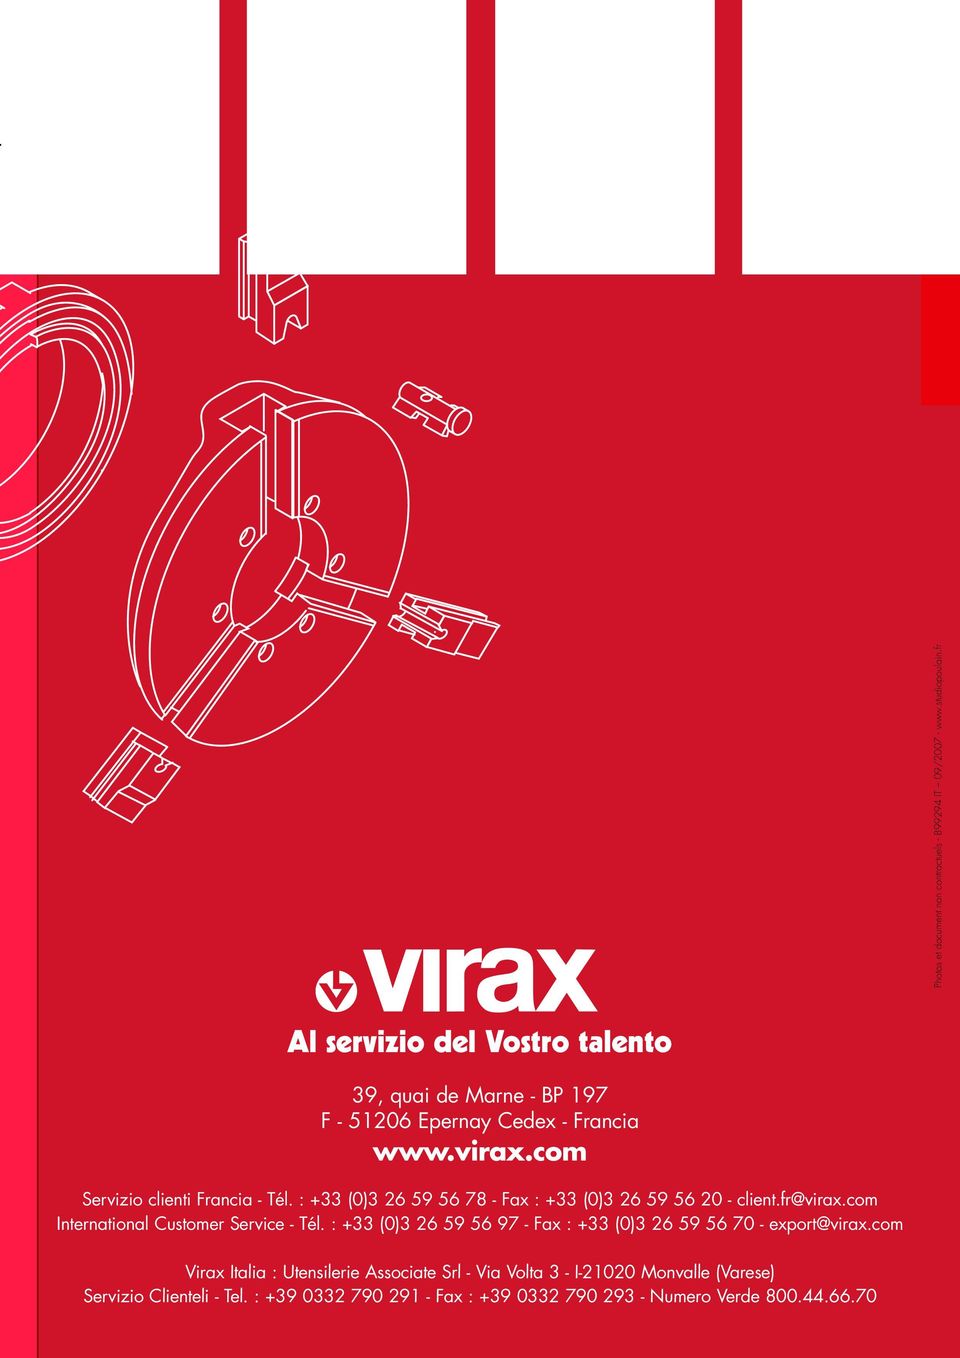 : +33 (0)3 26 59 56 78 - Fax : +33 (0)3 26 59 56 20 - client.fr@virax.com International Customer Service - Tél.